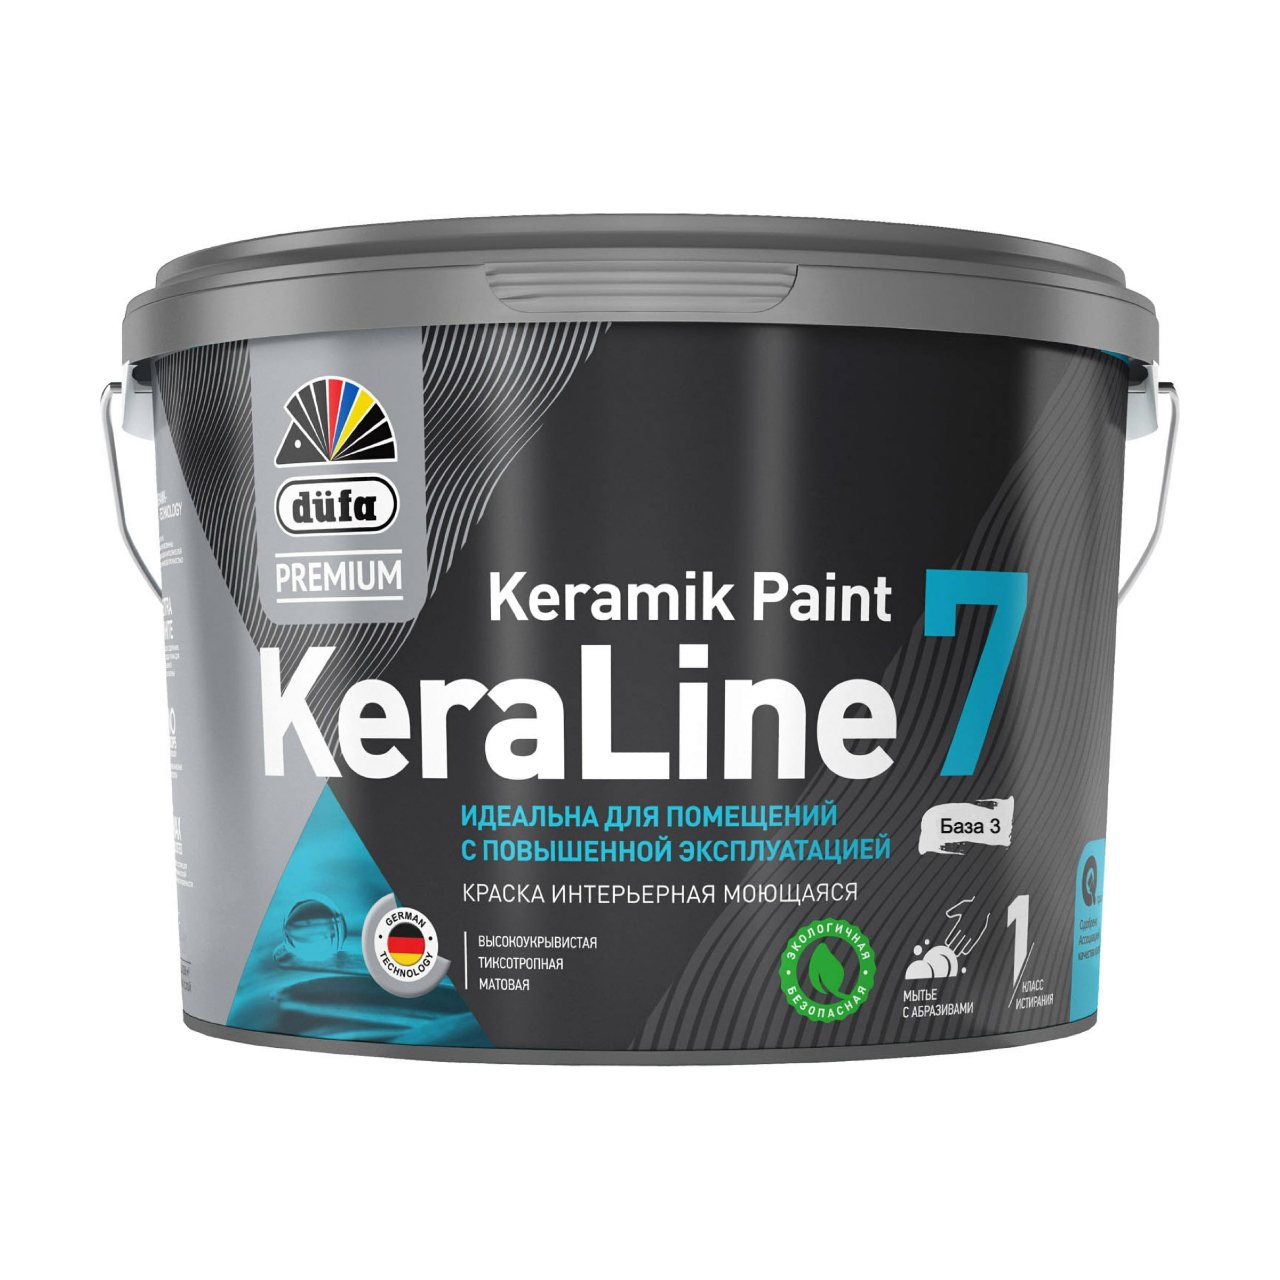 90190606 Краска для стен и потолков моющаяся Premium KeraLine Keramik Paint 7 матовая прозрачная база 3 2.5 л STLM-0126758 DUFA